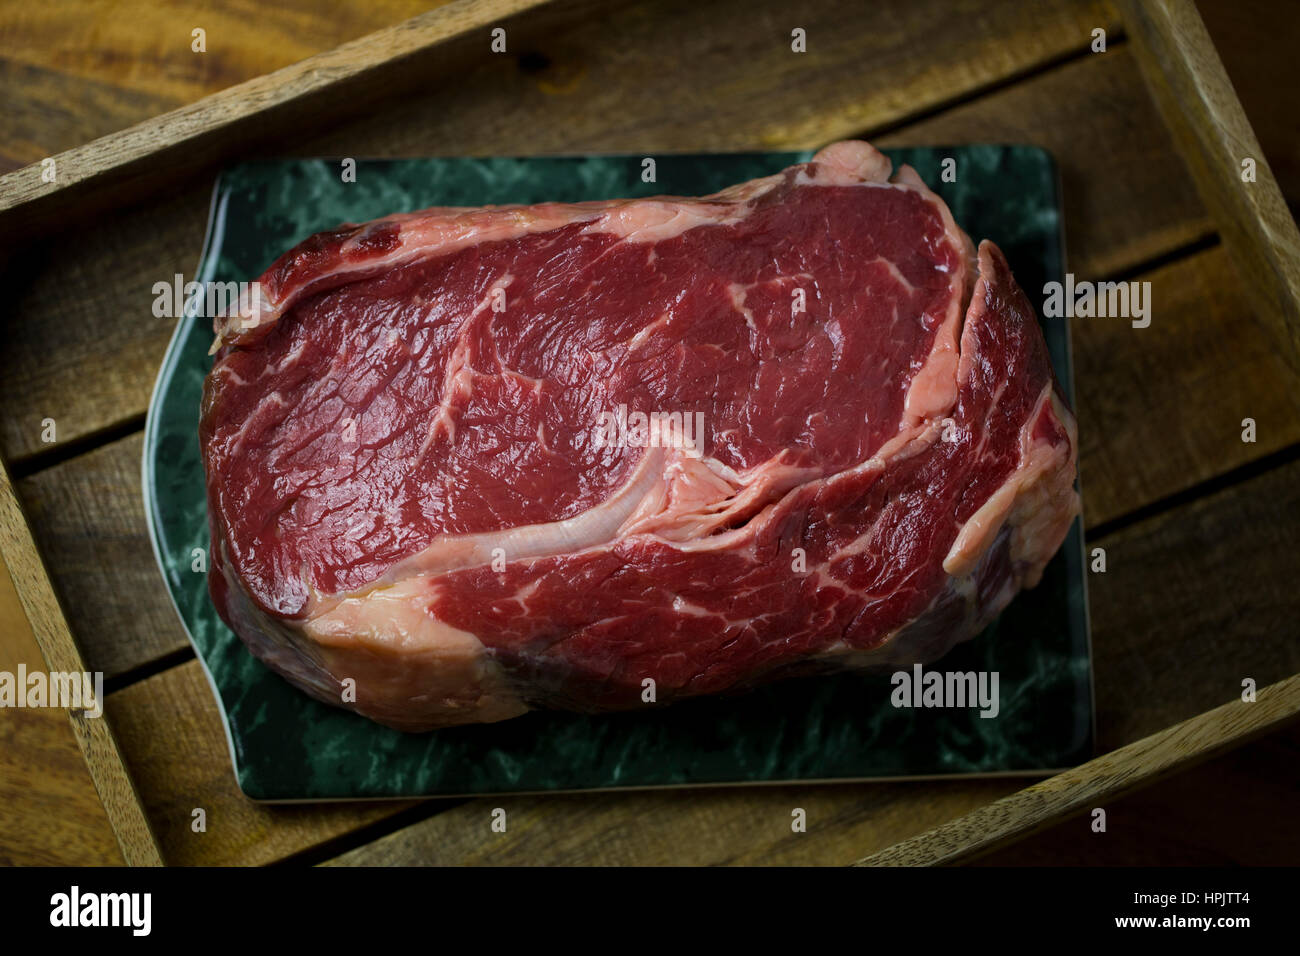 Entrecote steak on a tray Stock Photo